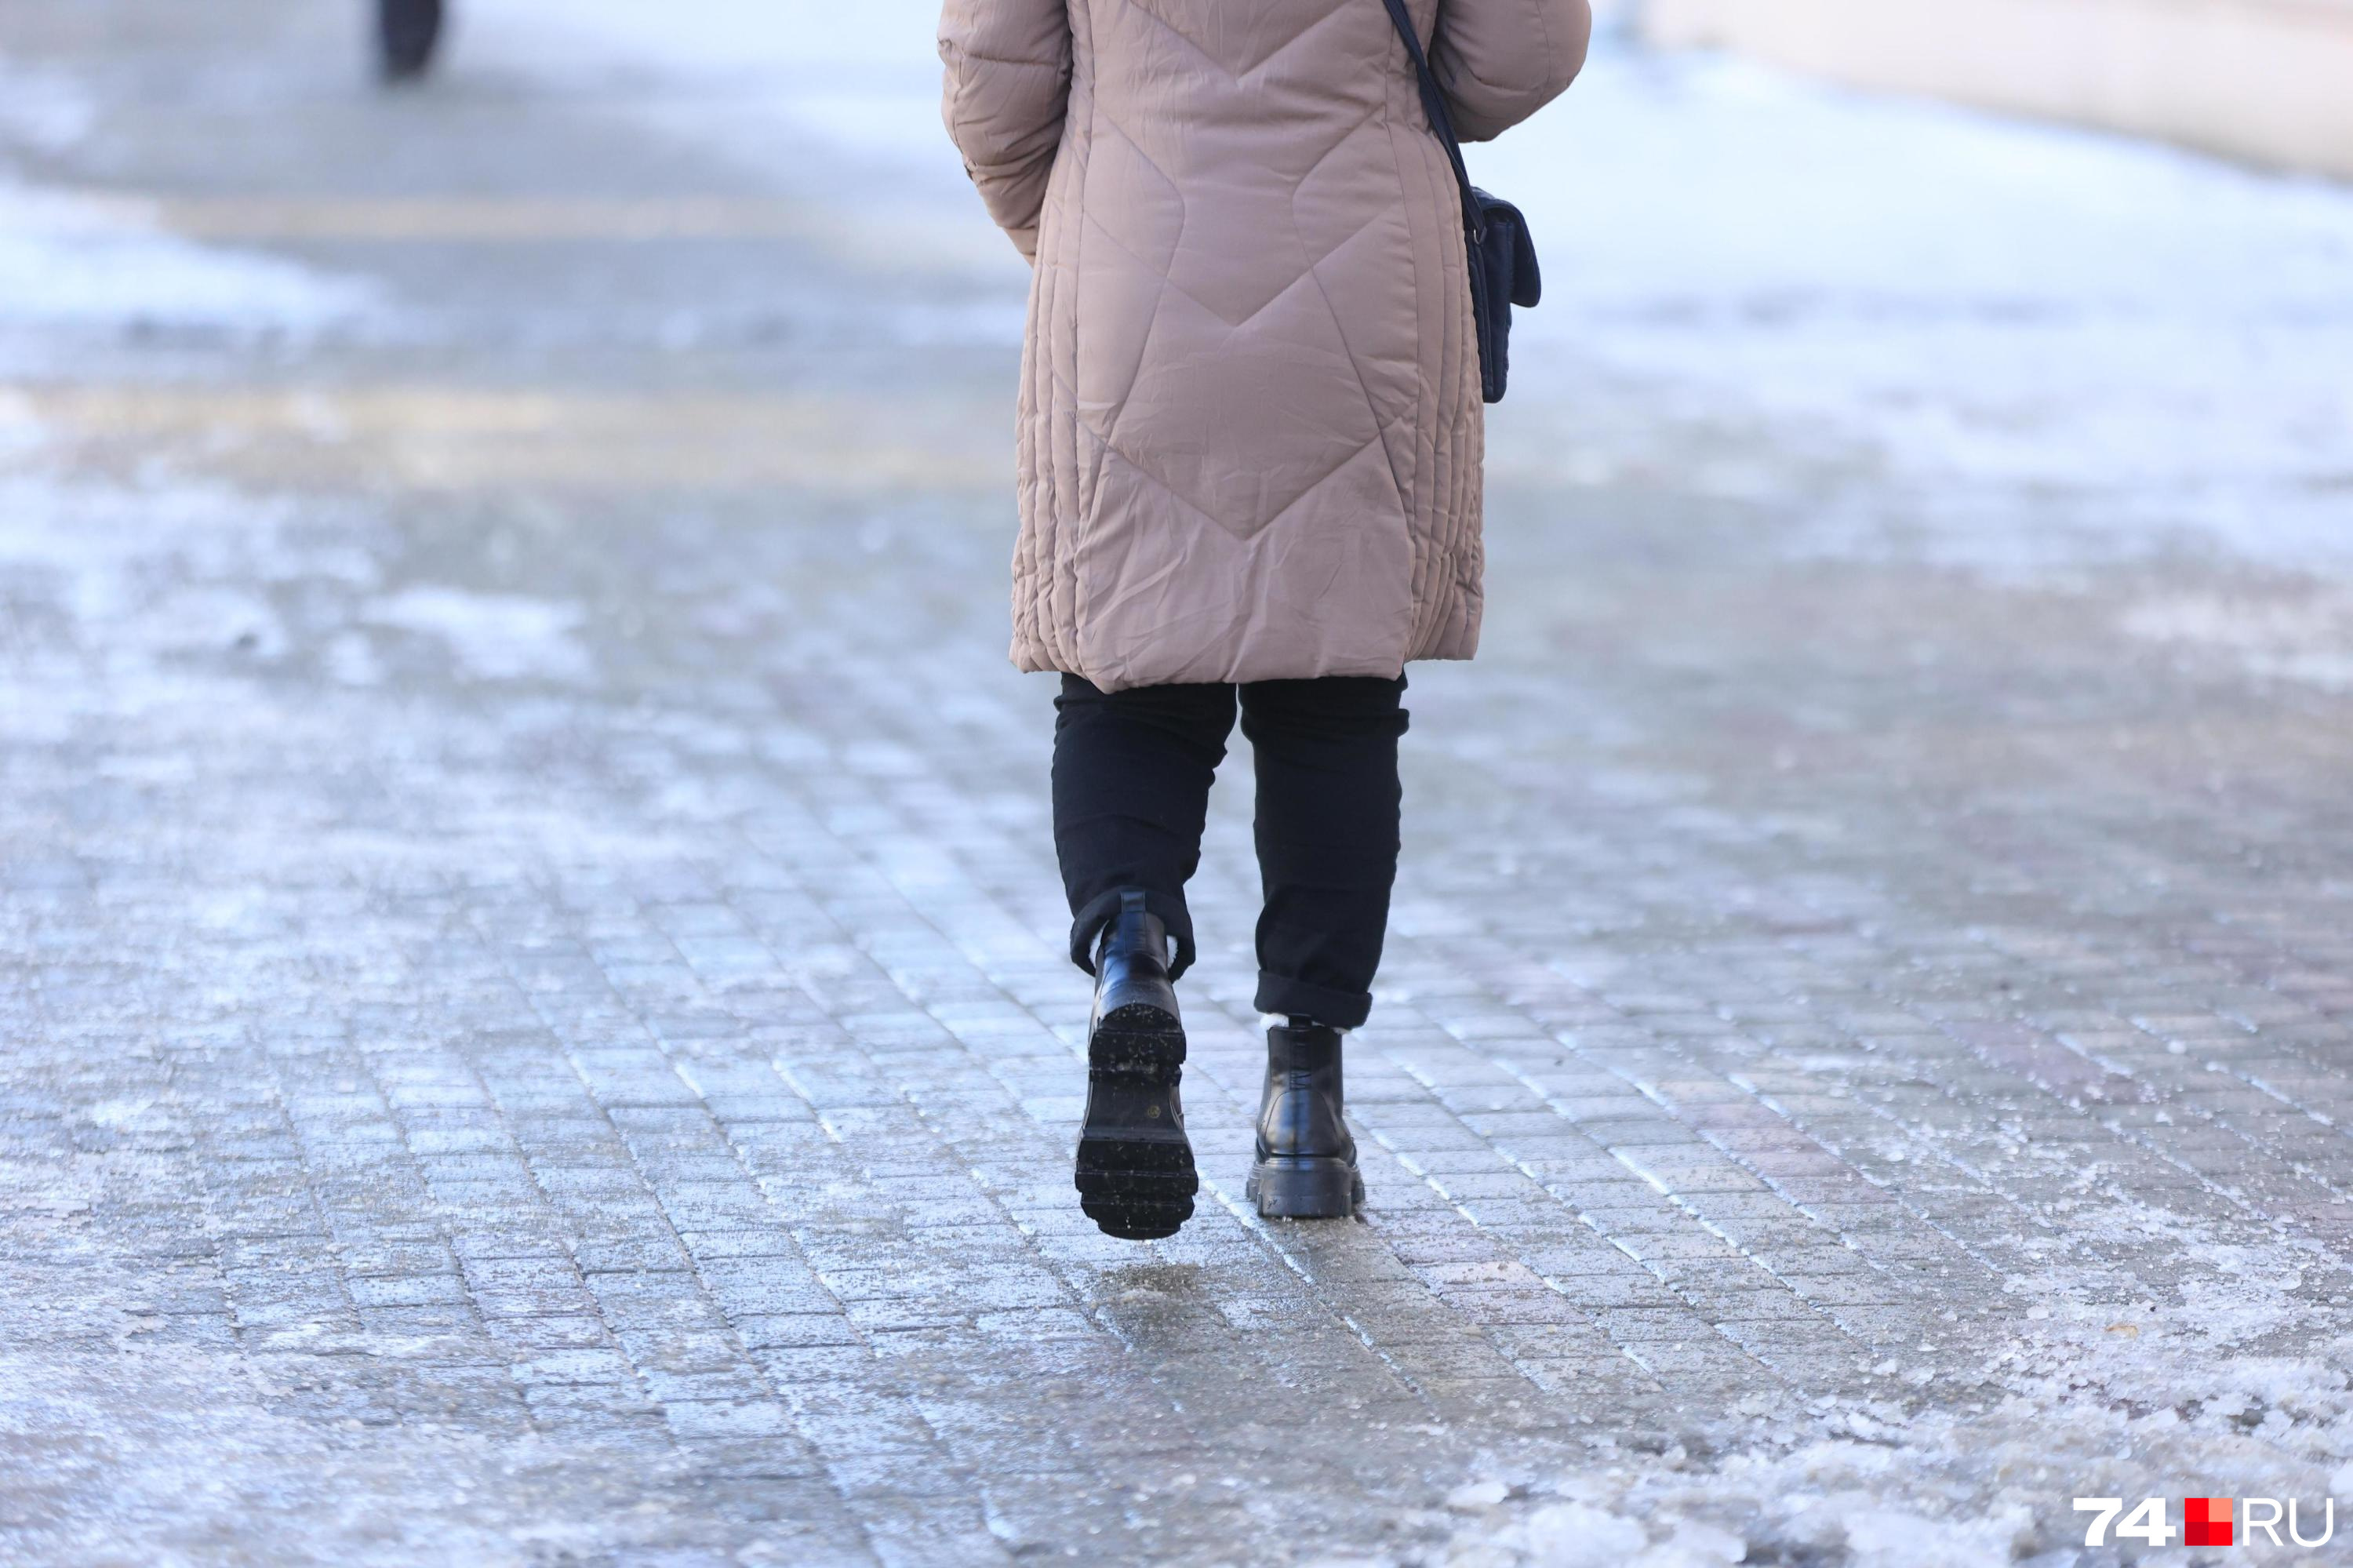 Пенсионерка отсудила у администрации Читы 70 тыс. руб. за падение на льду